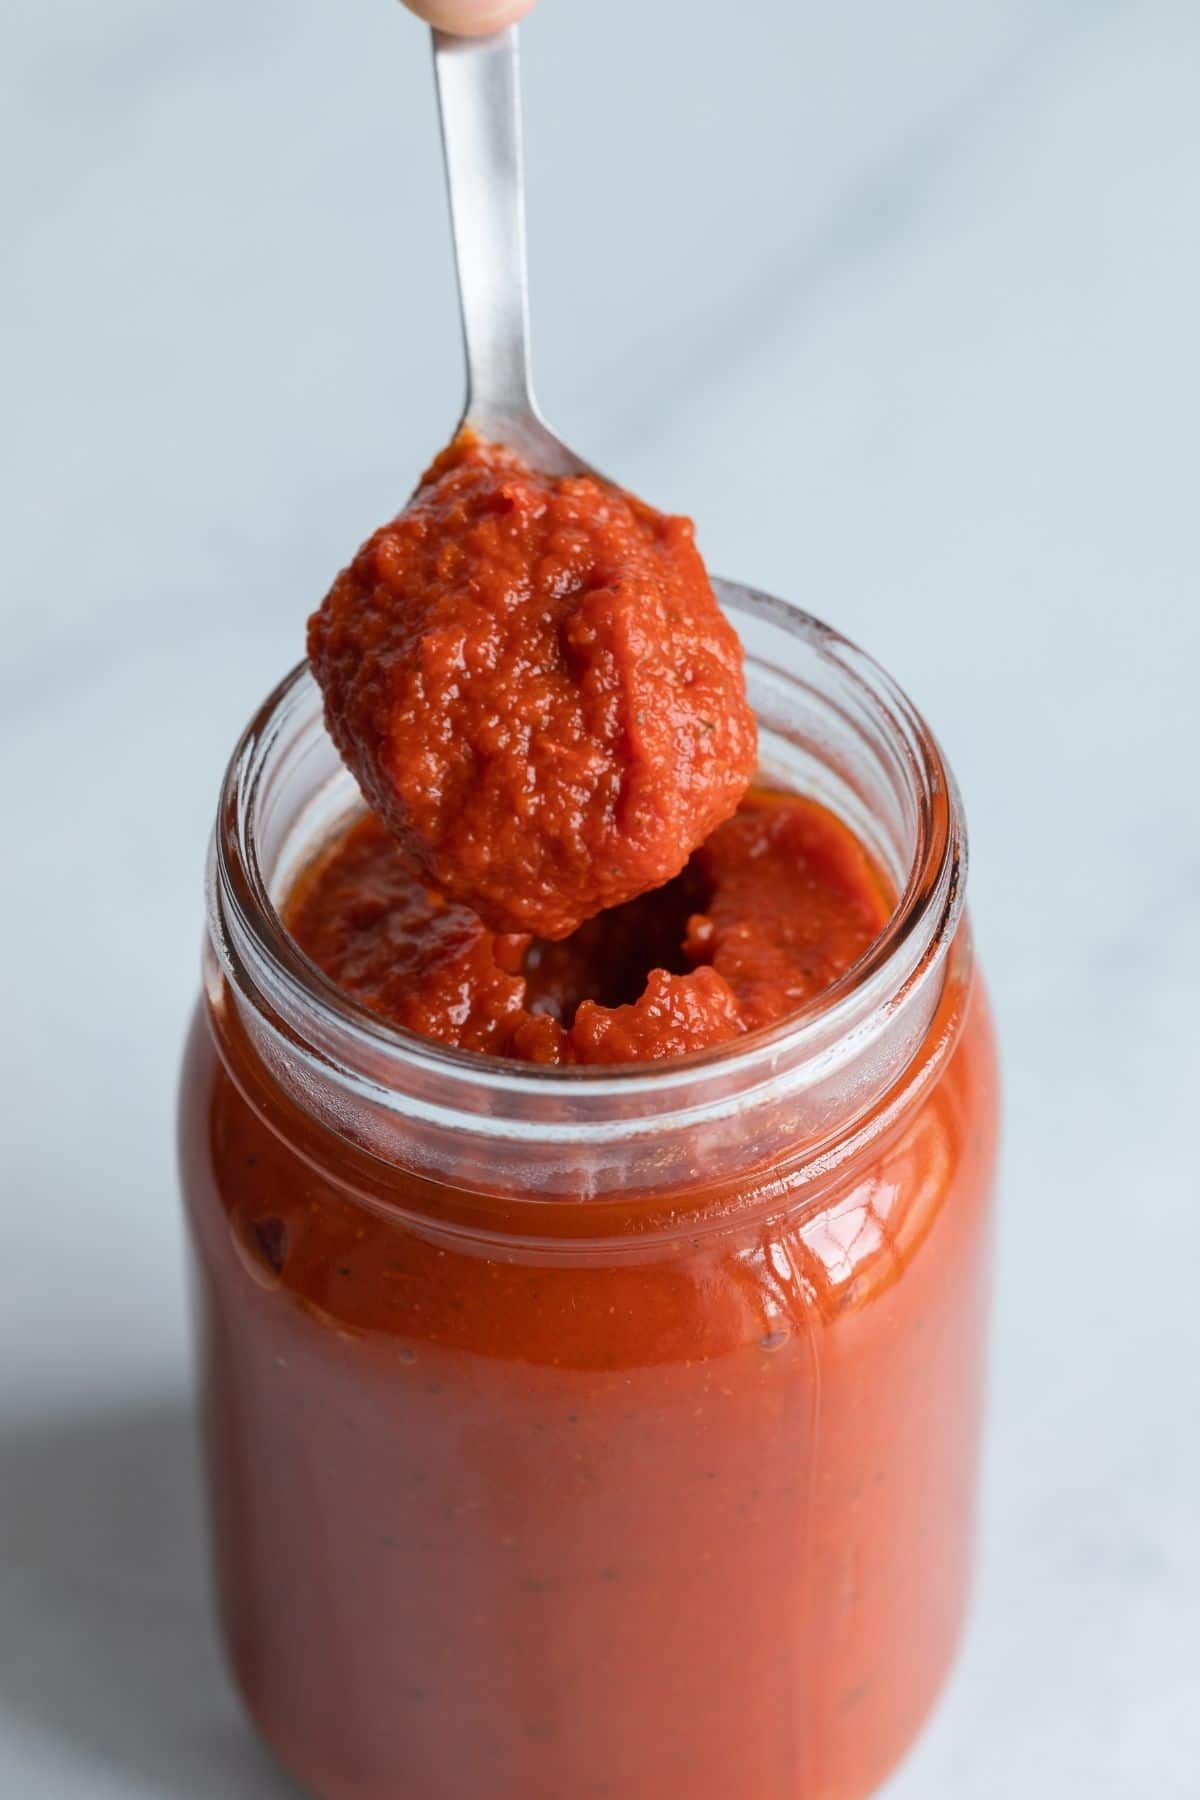 Best Pizza Sauce Recipe in a jar